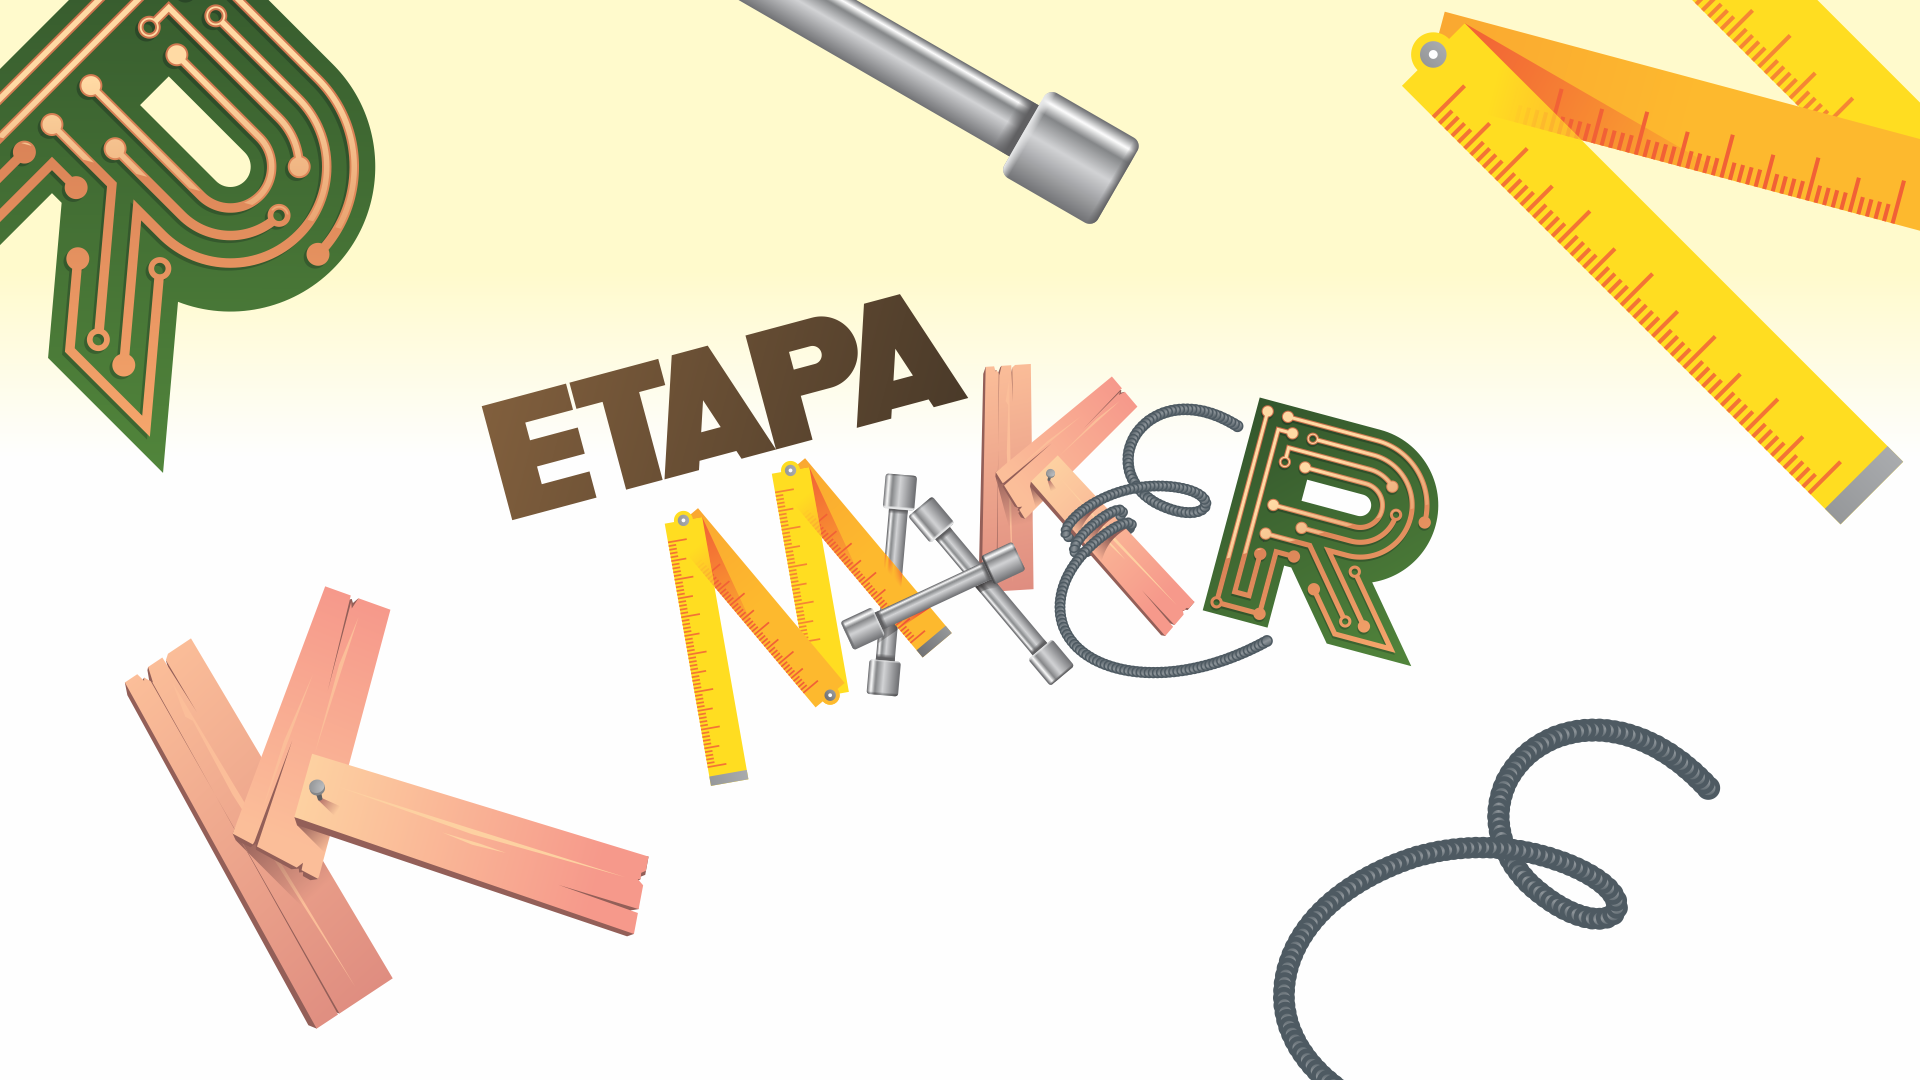 ETAPA Maker e-banner_hubspot 1 1920 x 1080 px